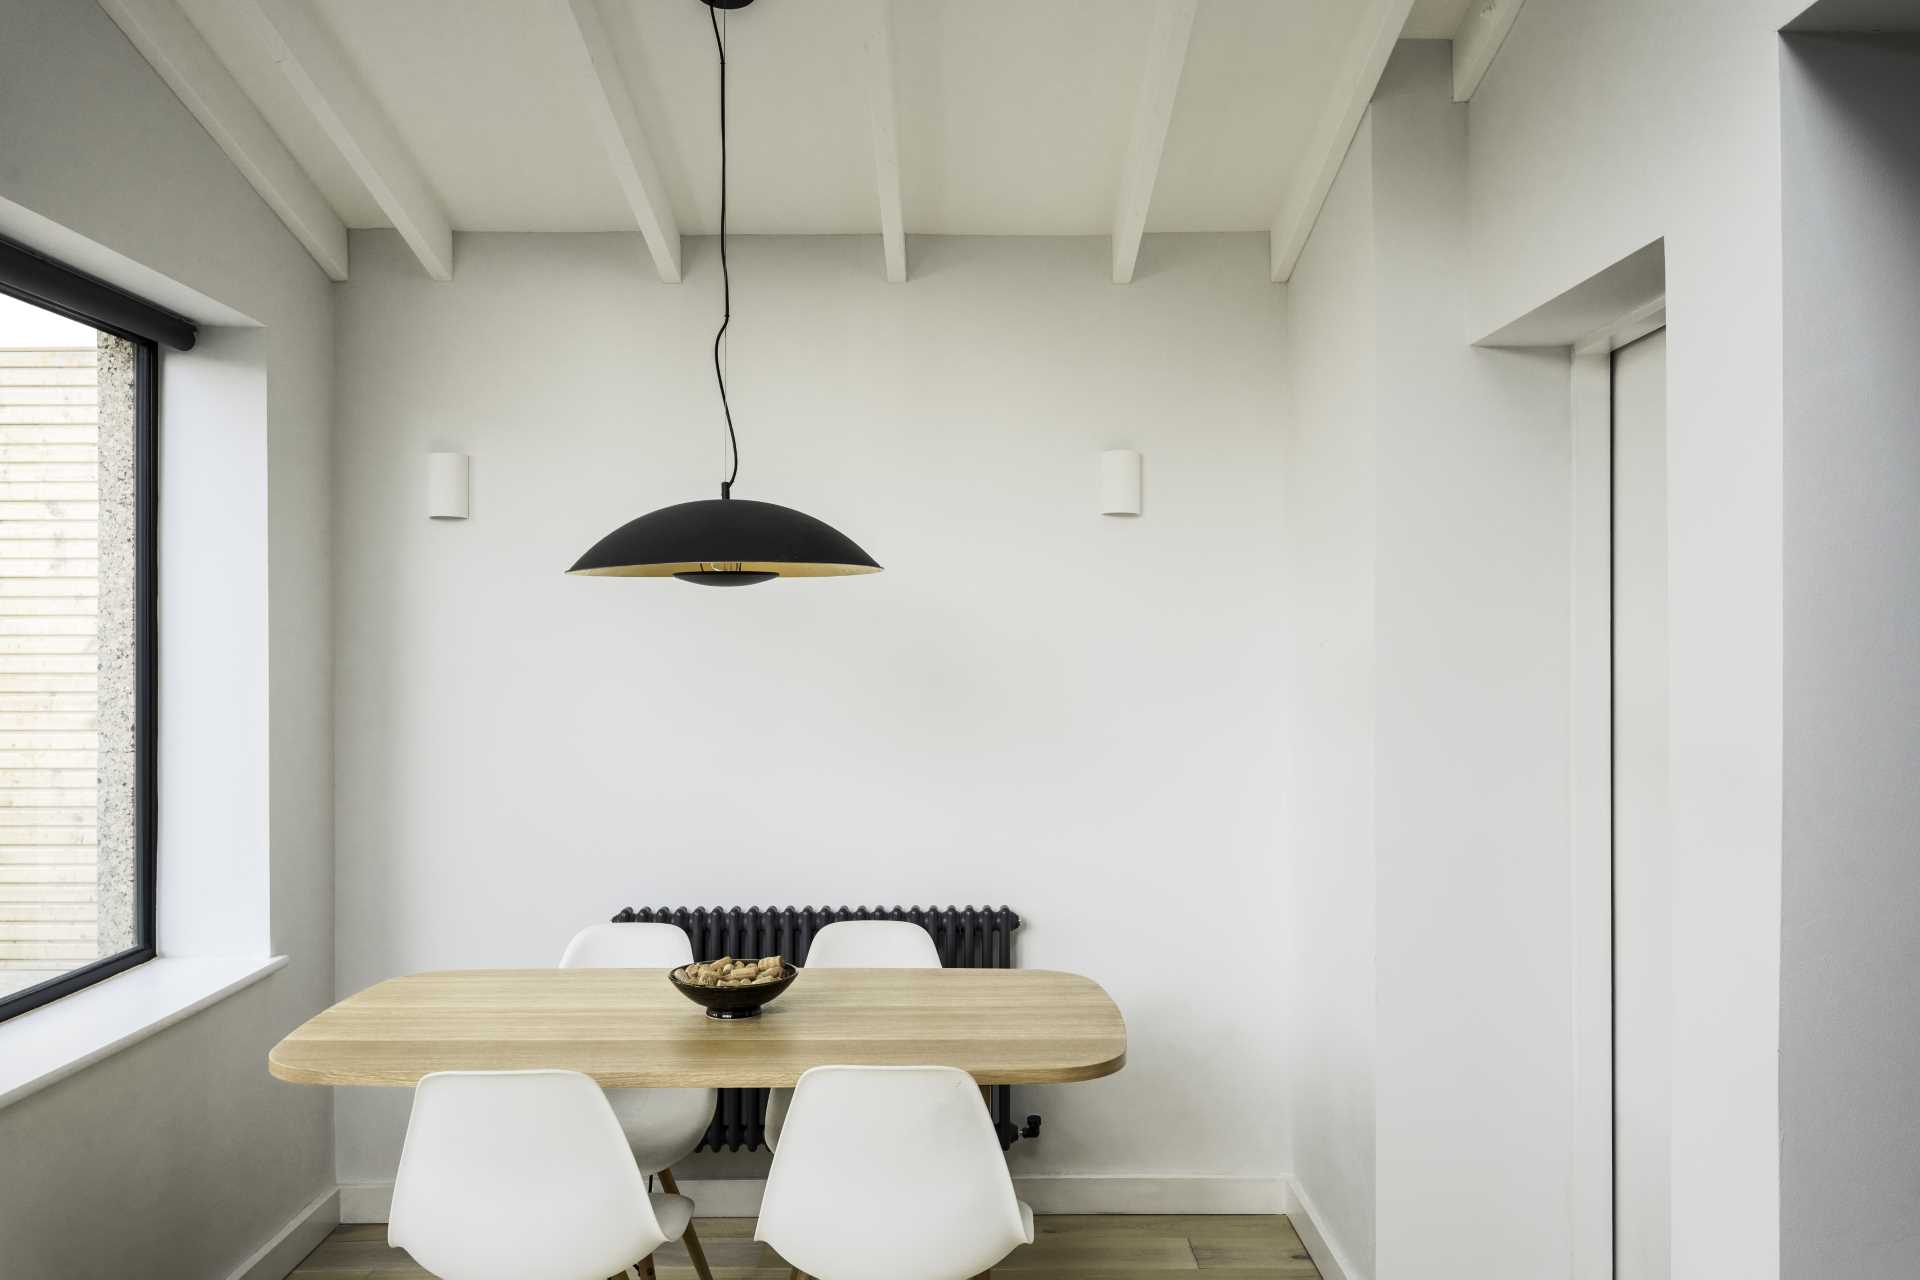 یک ناهارخوری کوچک با یک میز چوبی و یک چراغ آویز مشکی در بالا.